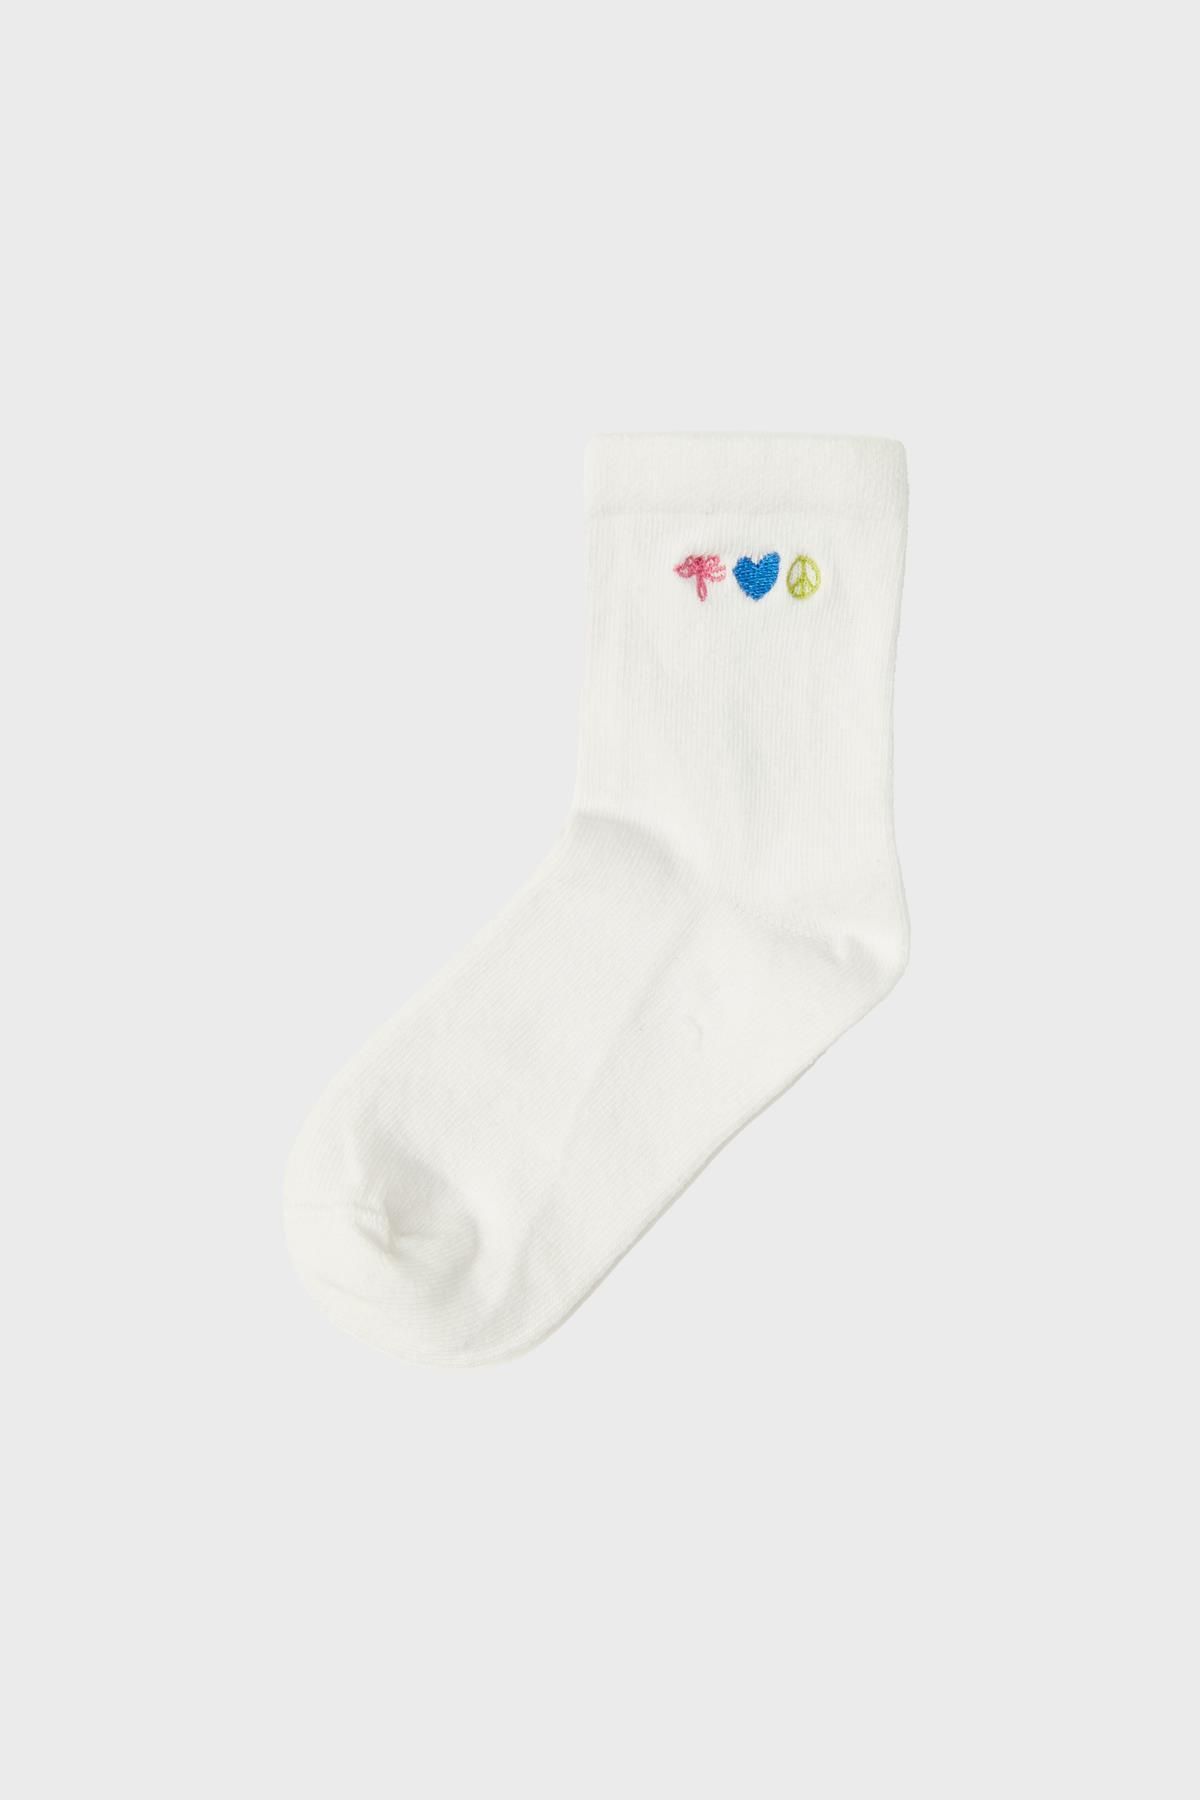 Tyess BG Store Kız Çocuk Beyaz Çorap